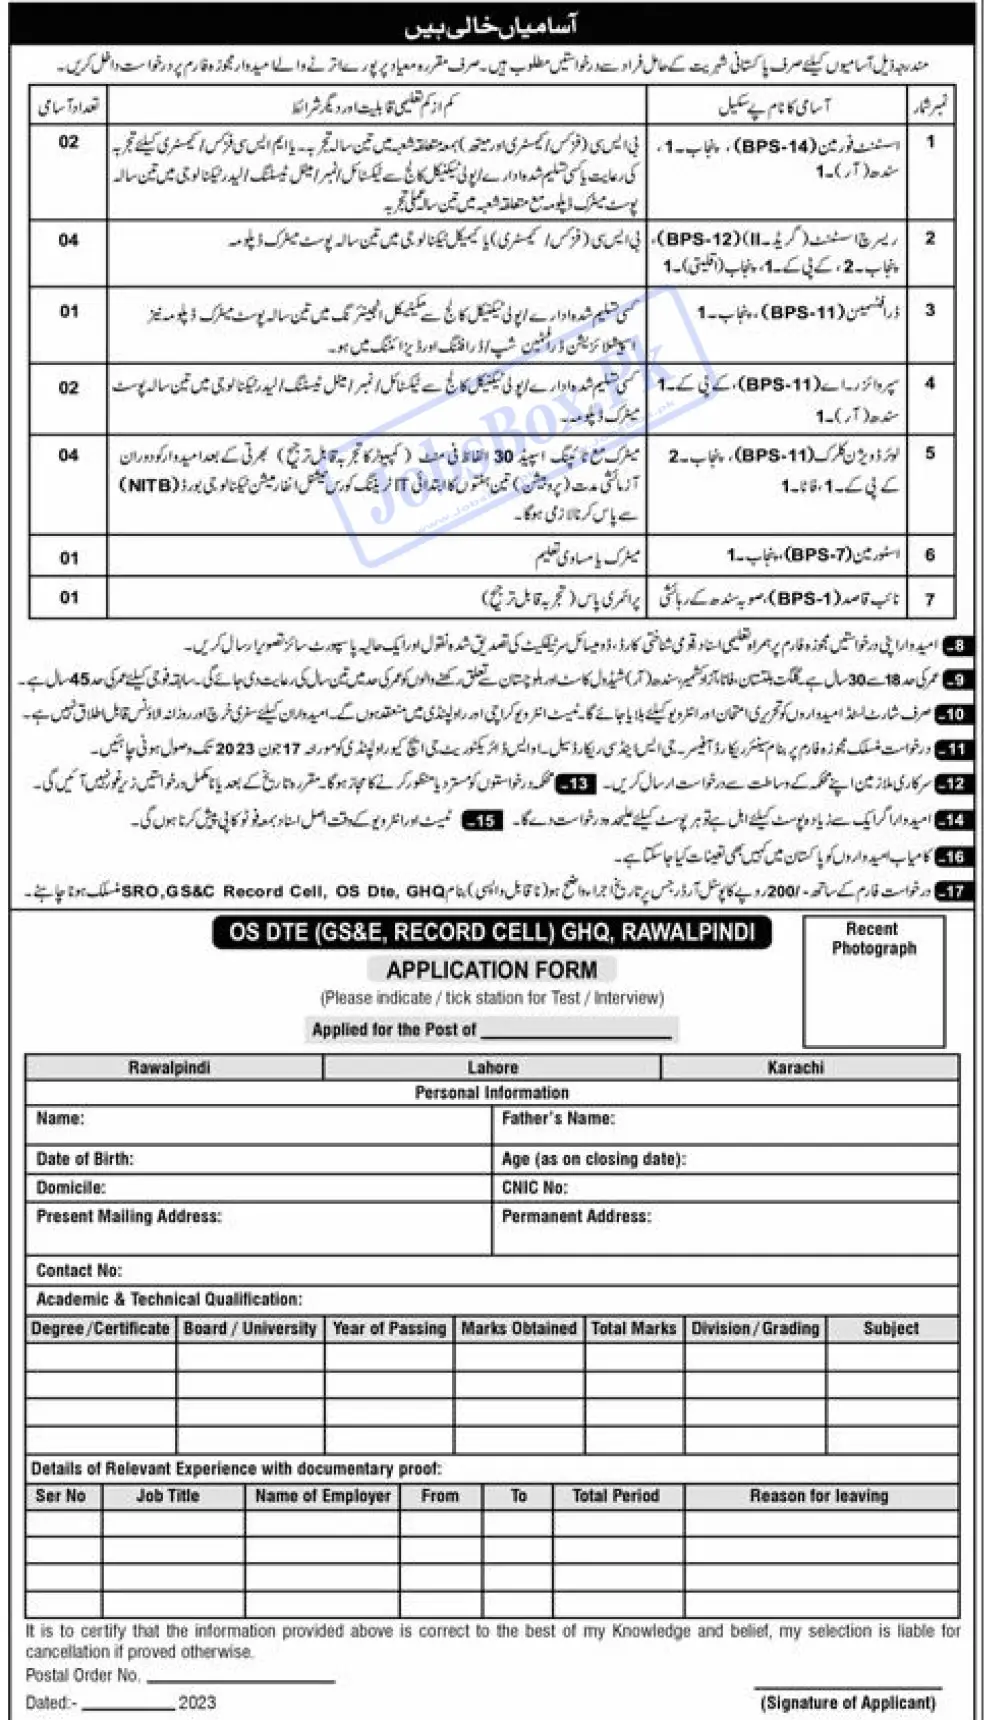 Pakistan Army Headquarters GHQ Rawalpindi Jobs 2023